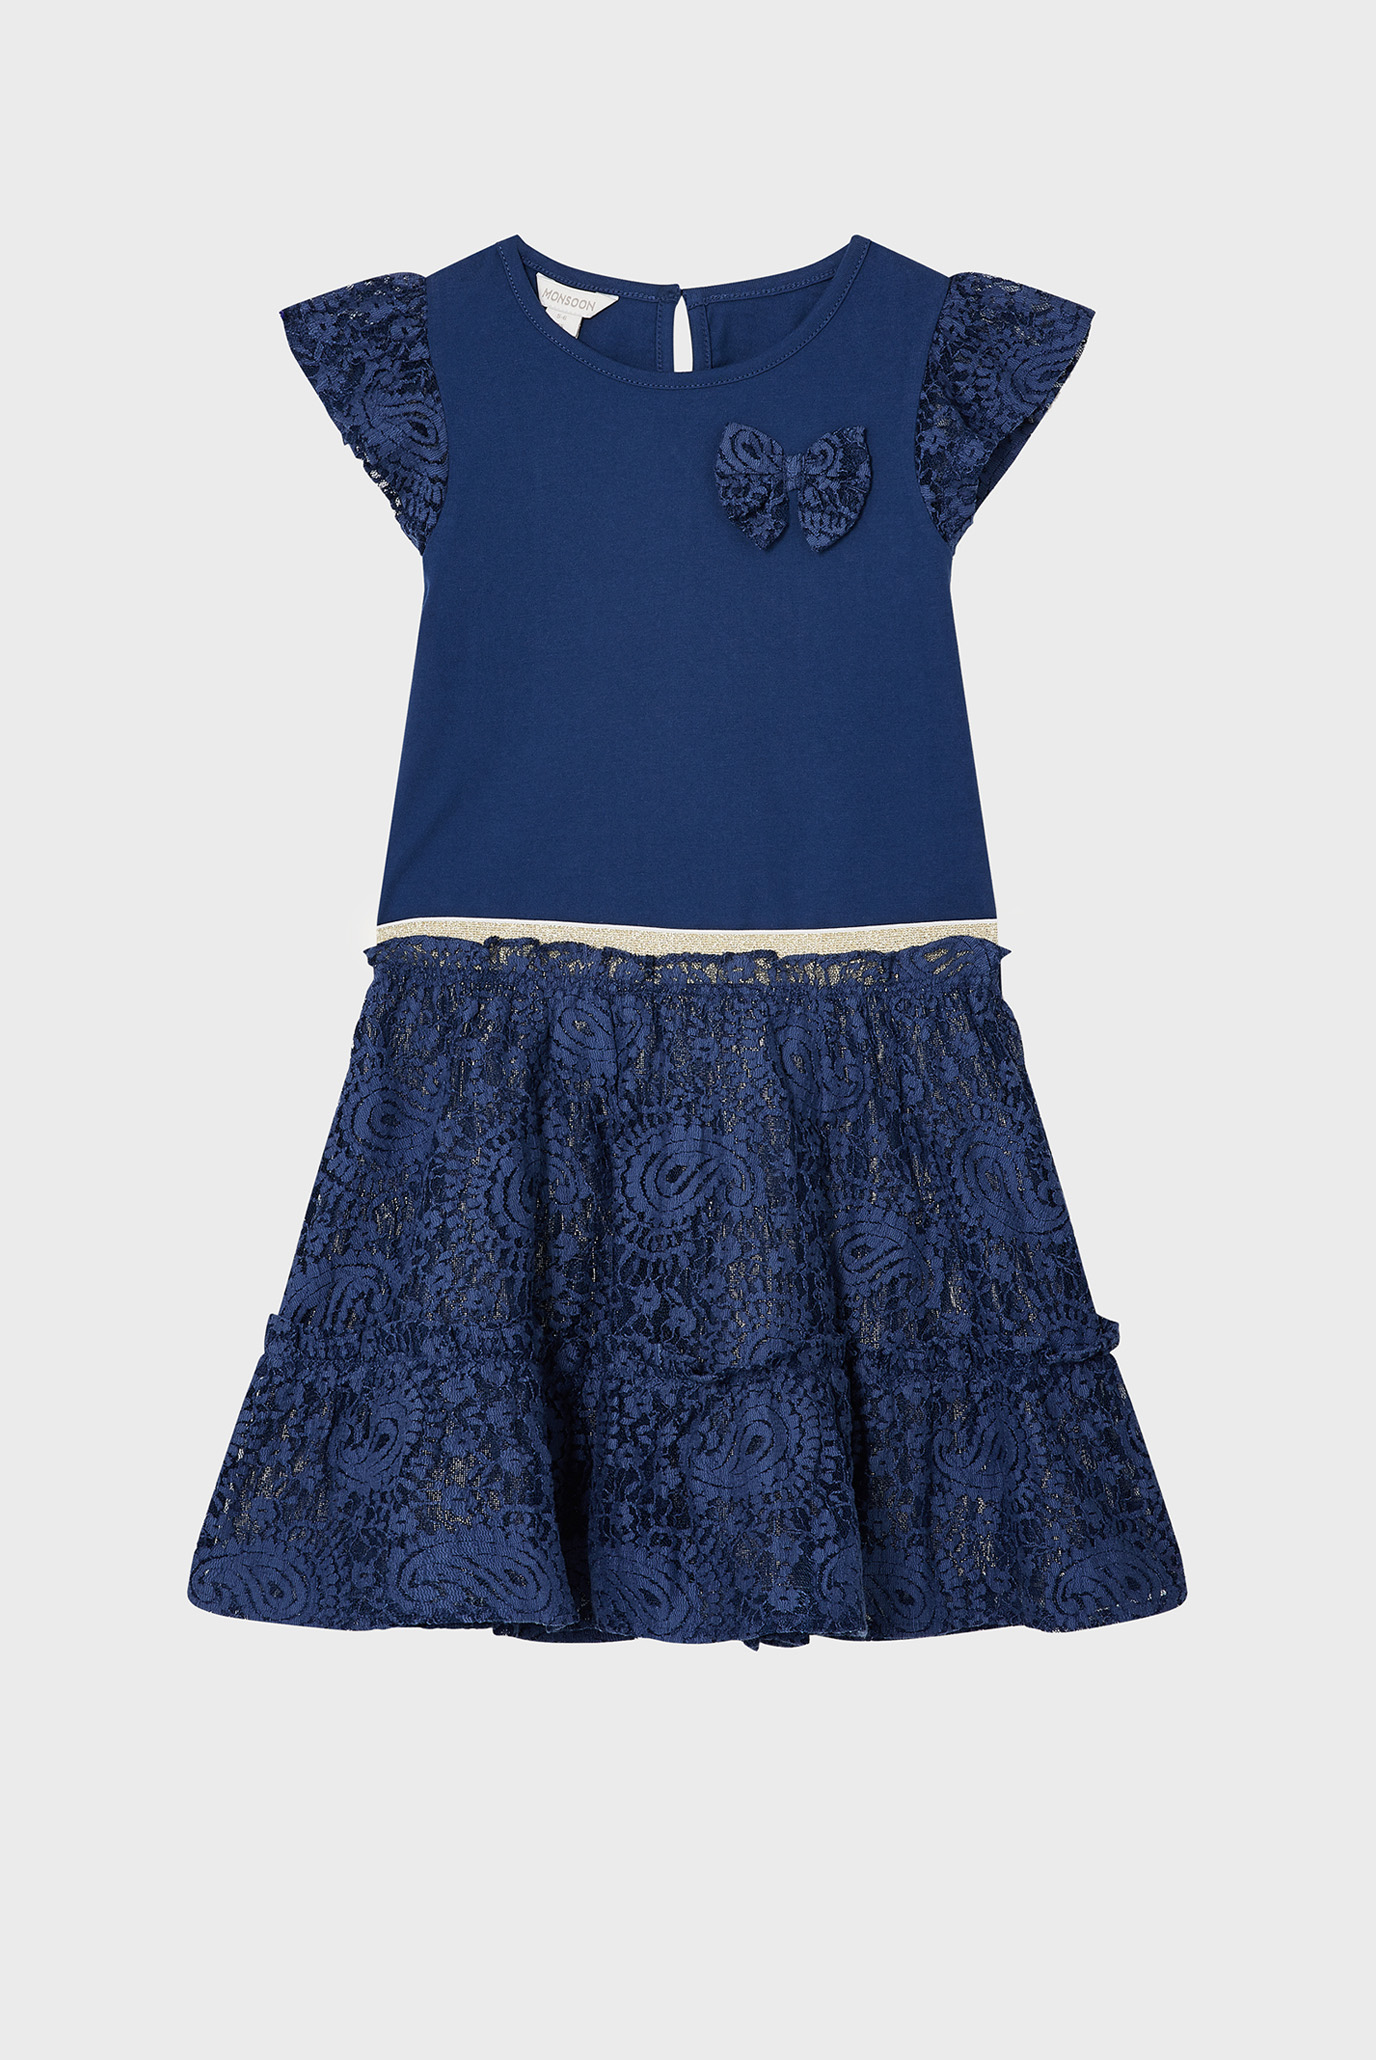 Детский комплект одежды (футболка, юбка) Lace Top & Skirt Set 1